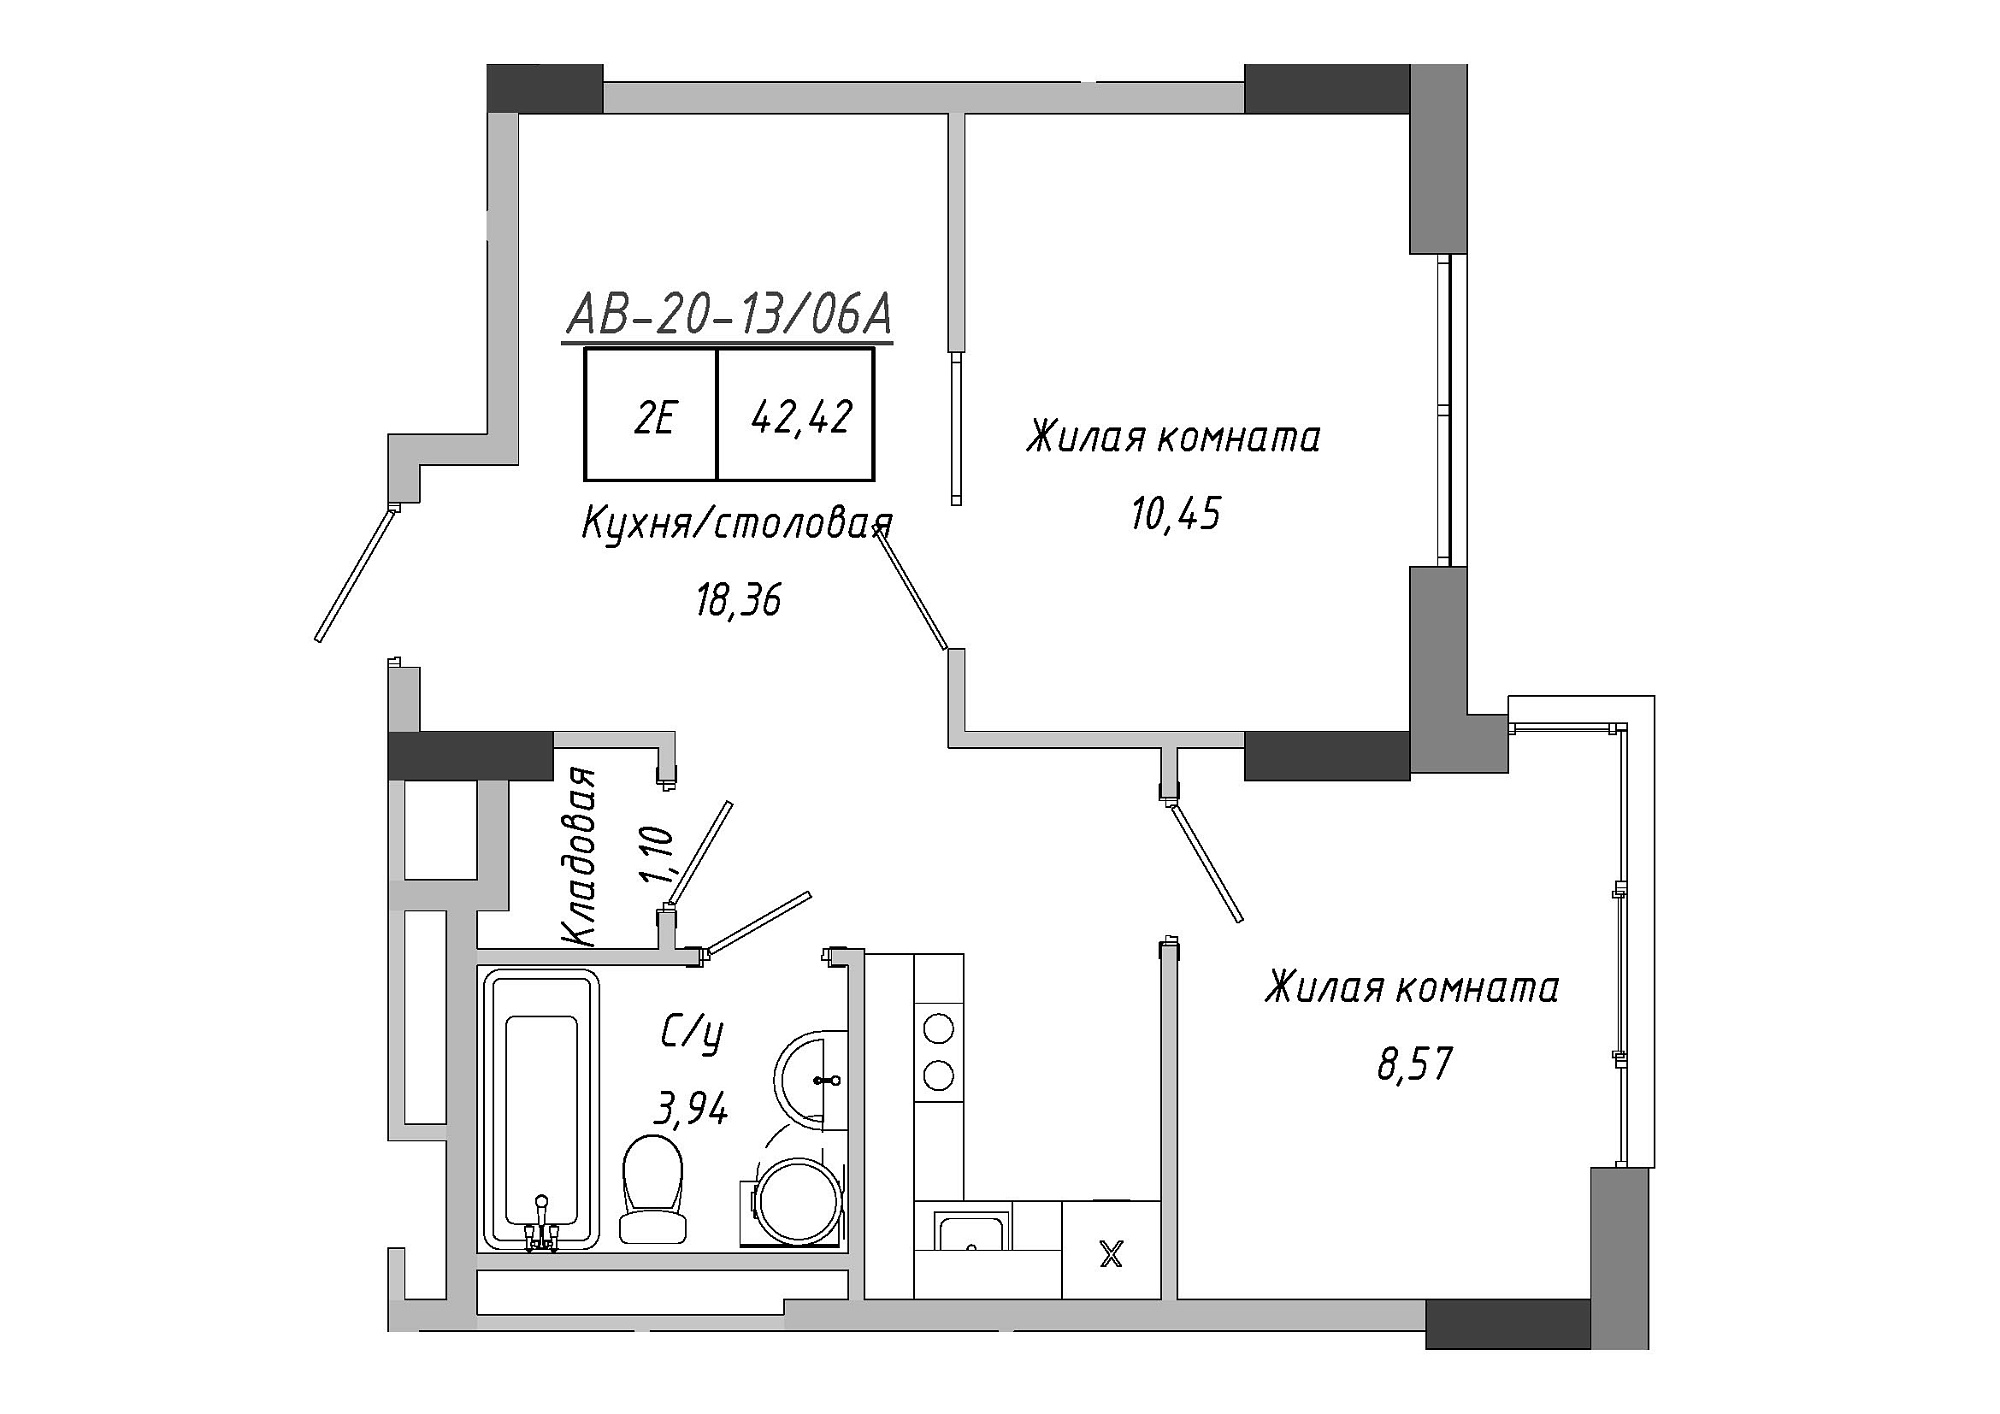 Планування 2-к квартира площею 42.42м2, AB-20-13/0106a.